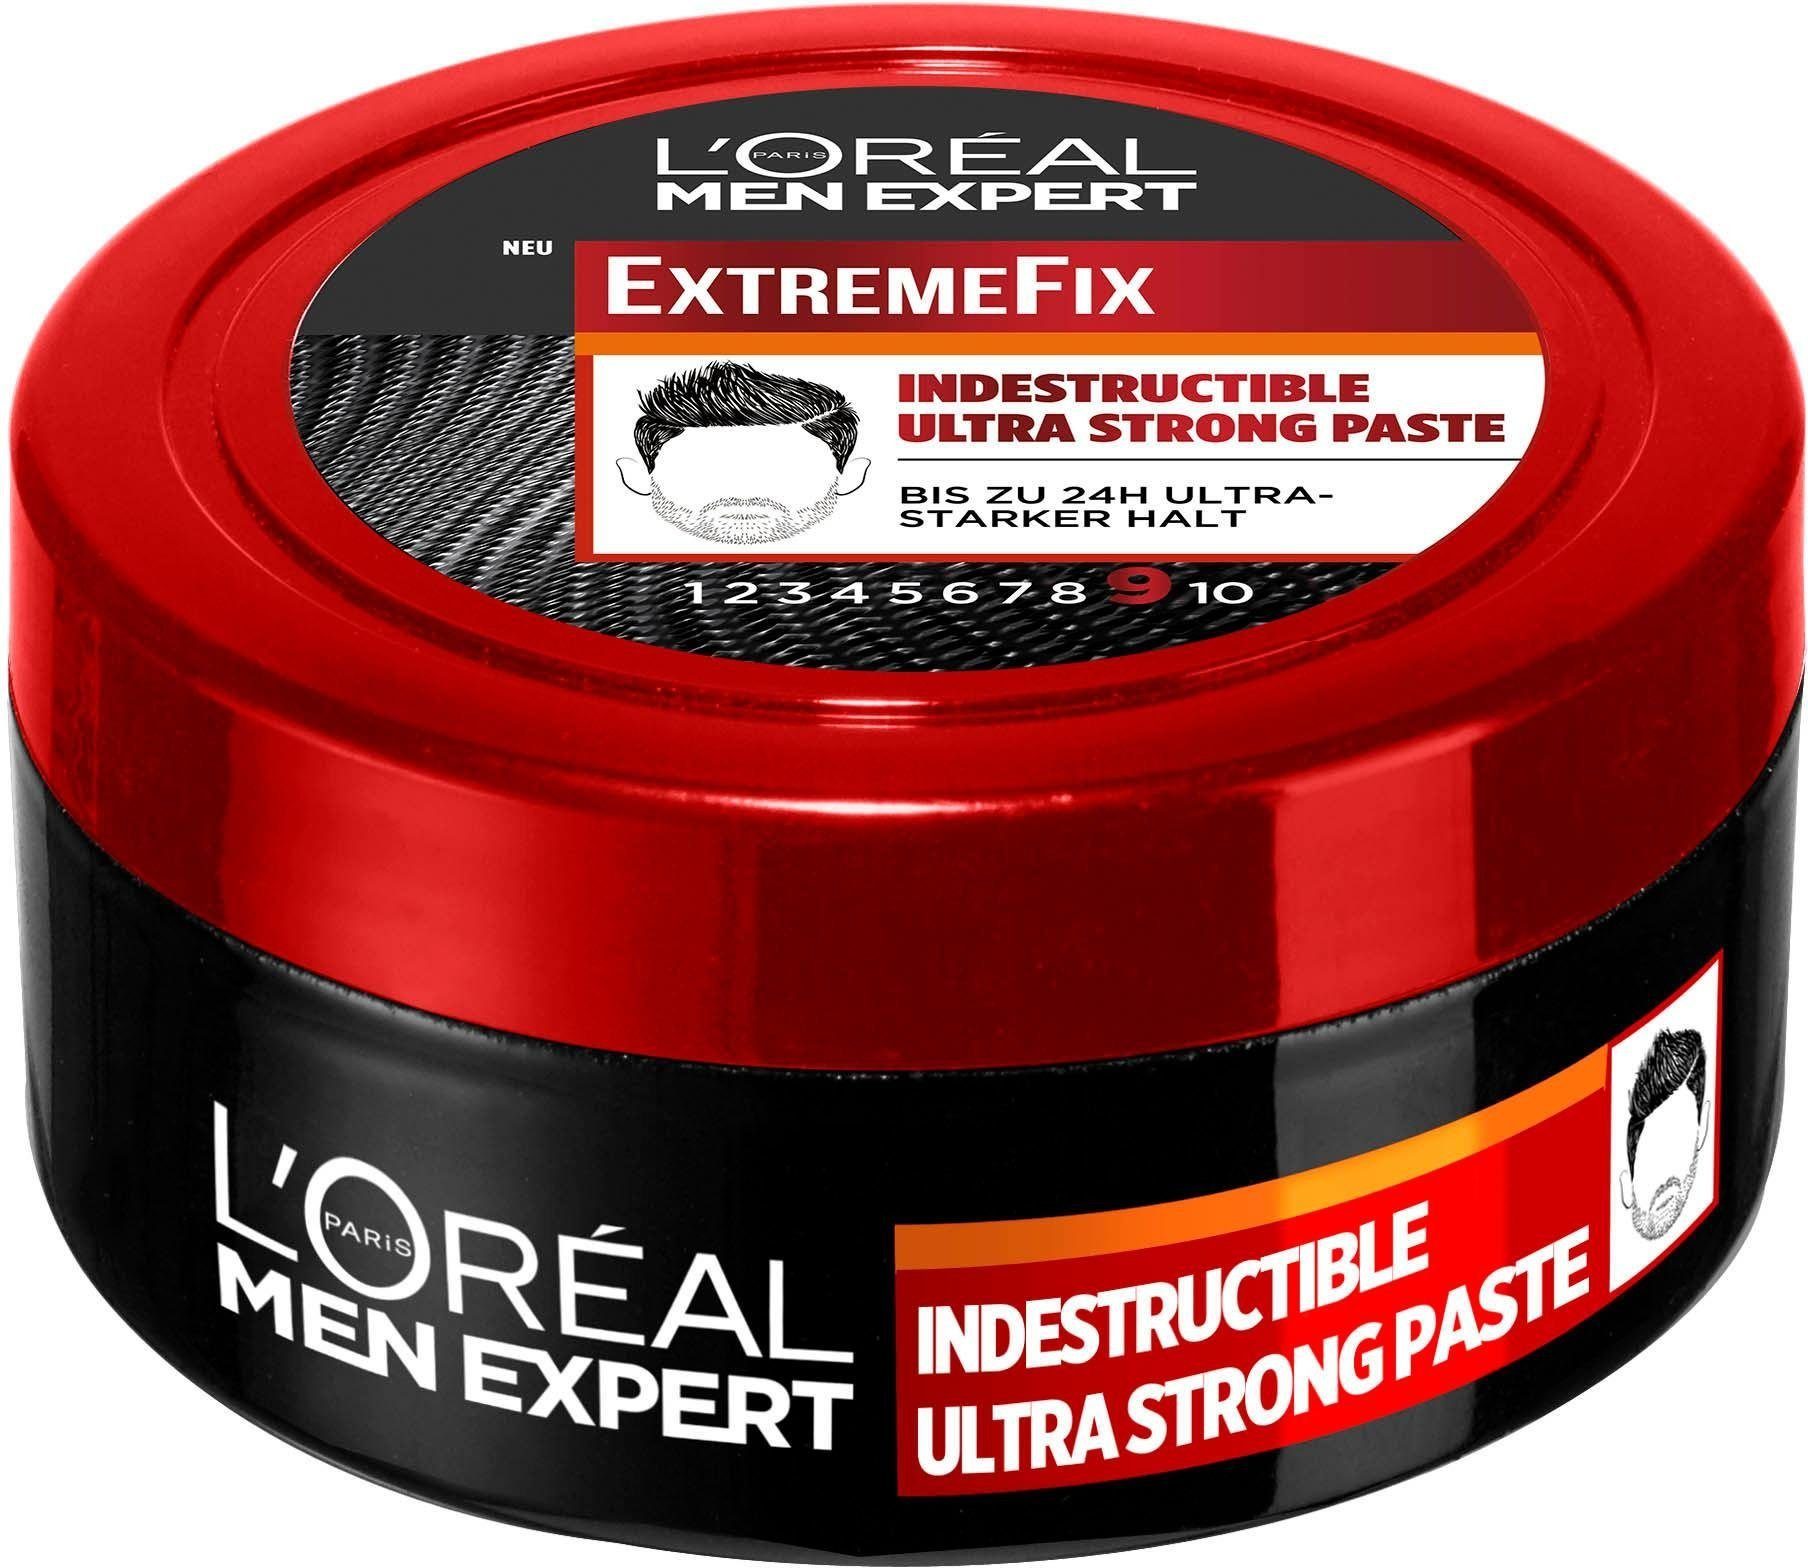 Haarpomade MEN Extreme L'ORÉAL Fix PARIS Indestructible EXPERT Paste